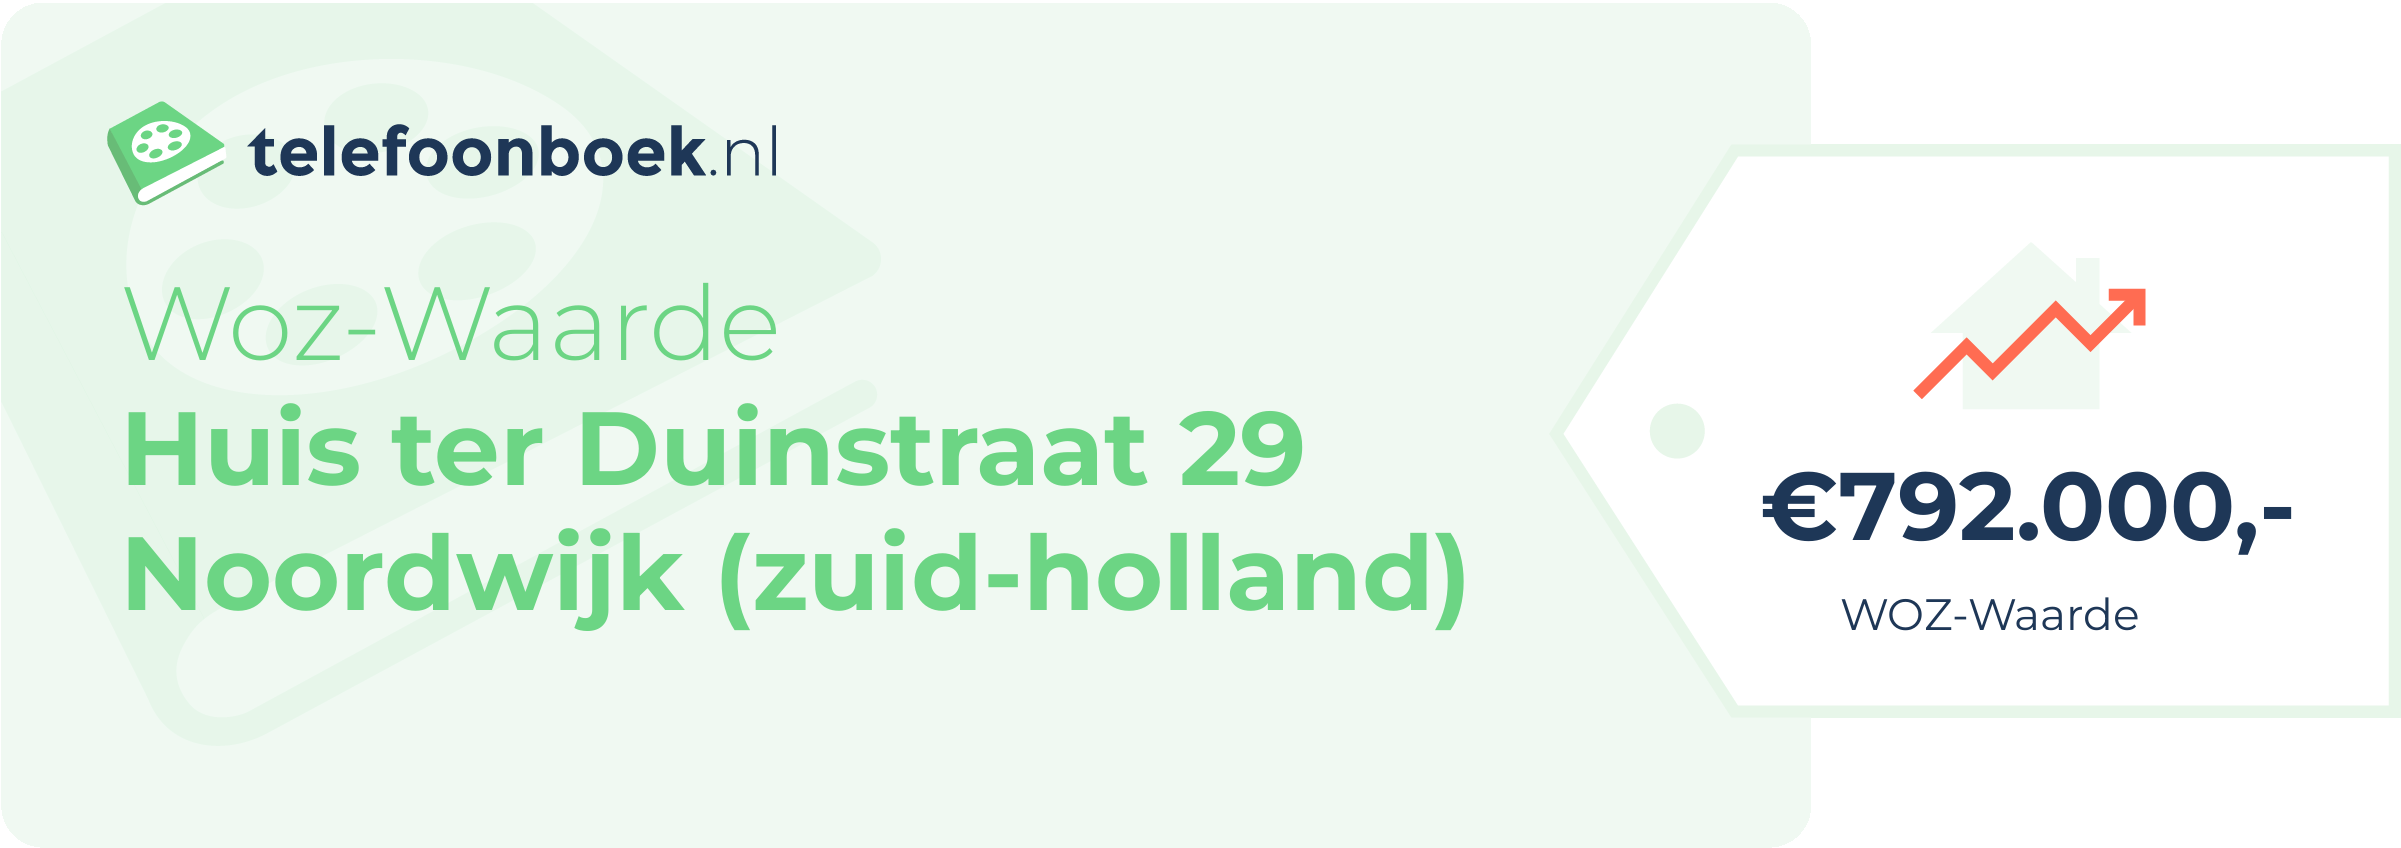 WOZ-waarde Huis Ter Duinstraat 29 Noordwijk (Zuid-Holland)